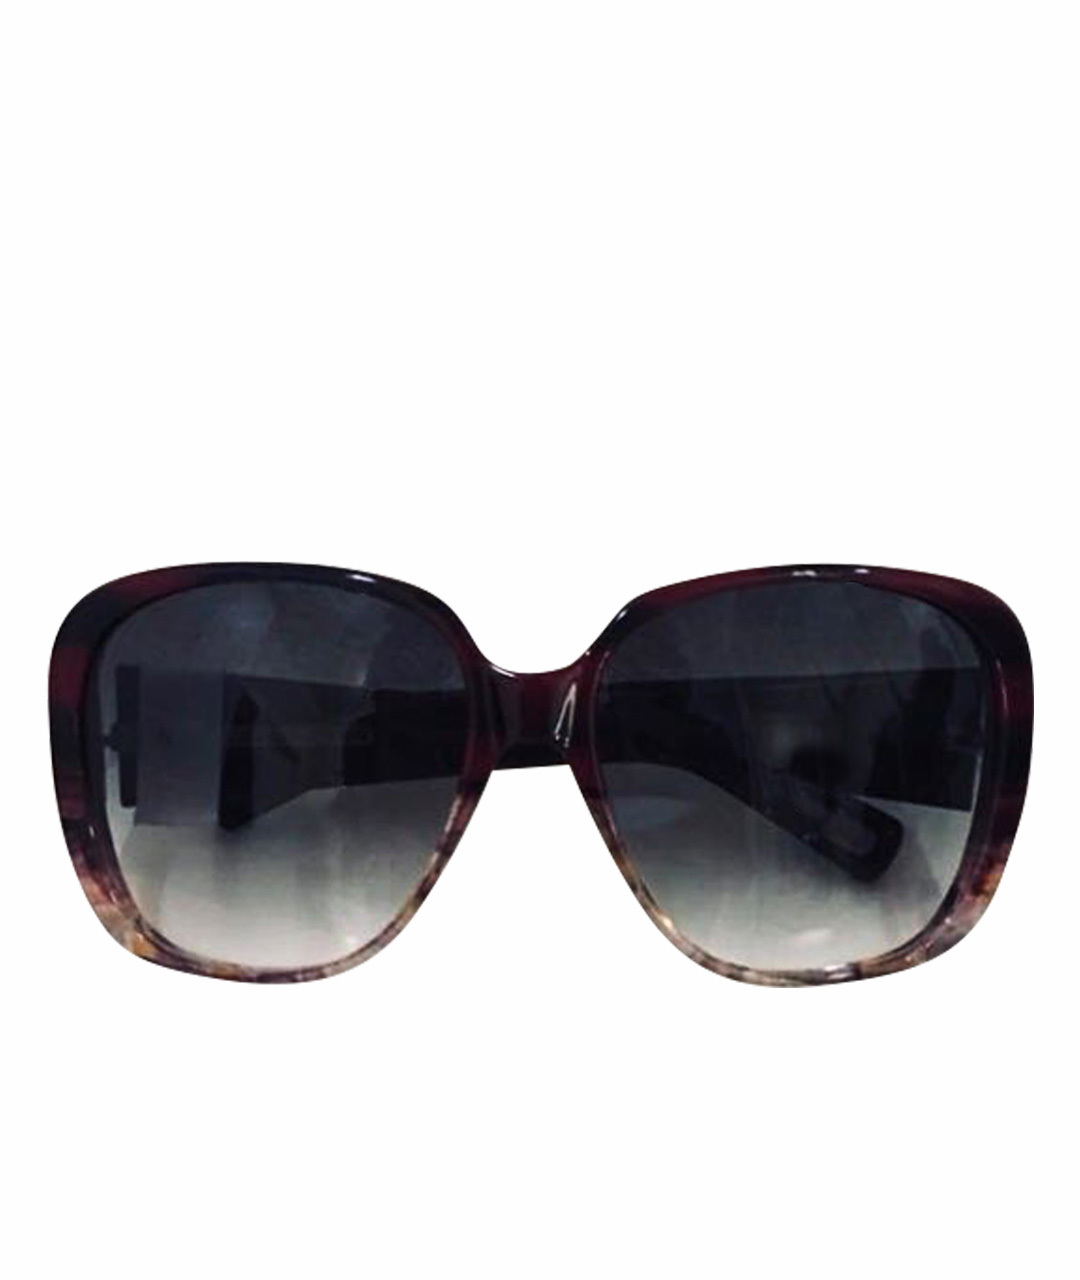 MARC JACOBS Бордовые пластиковые солнцезащитные очки, фото 1